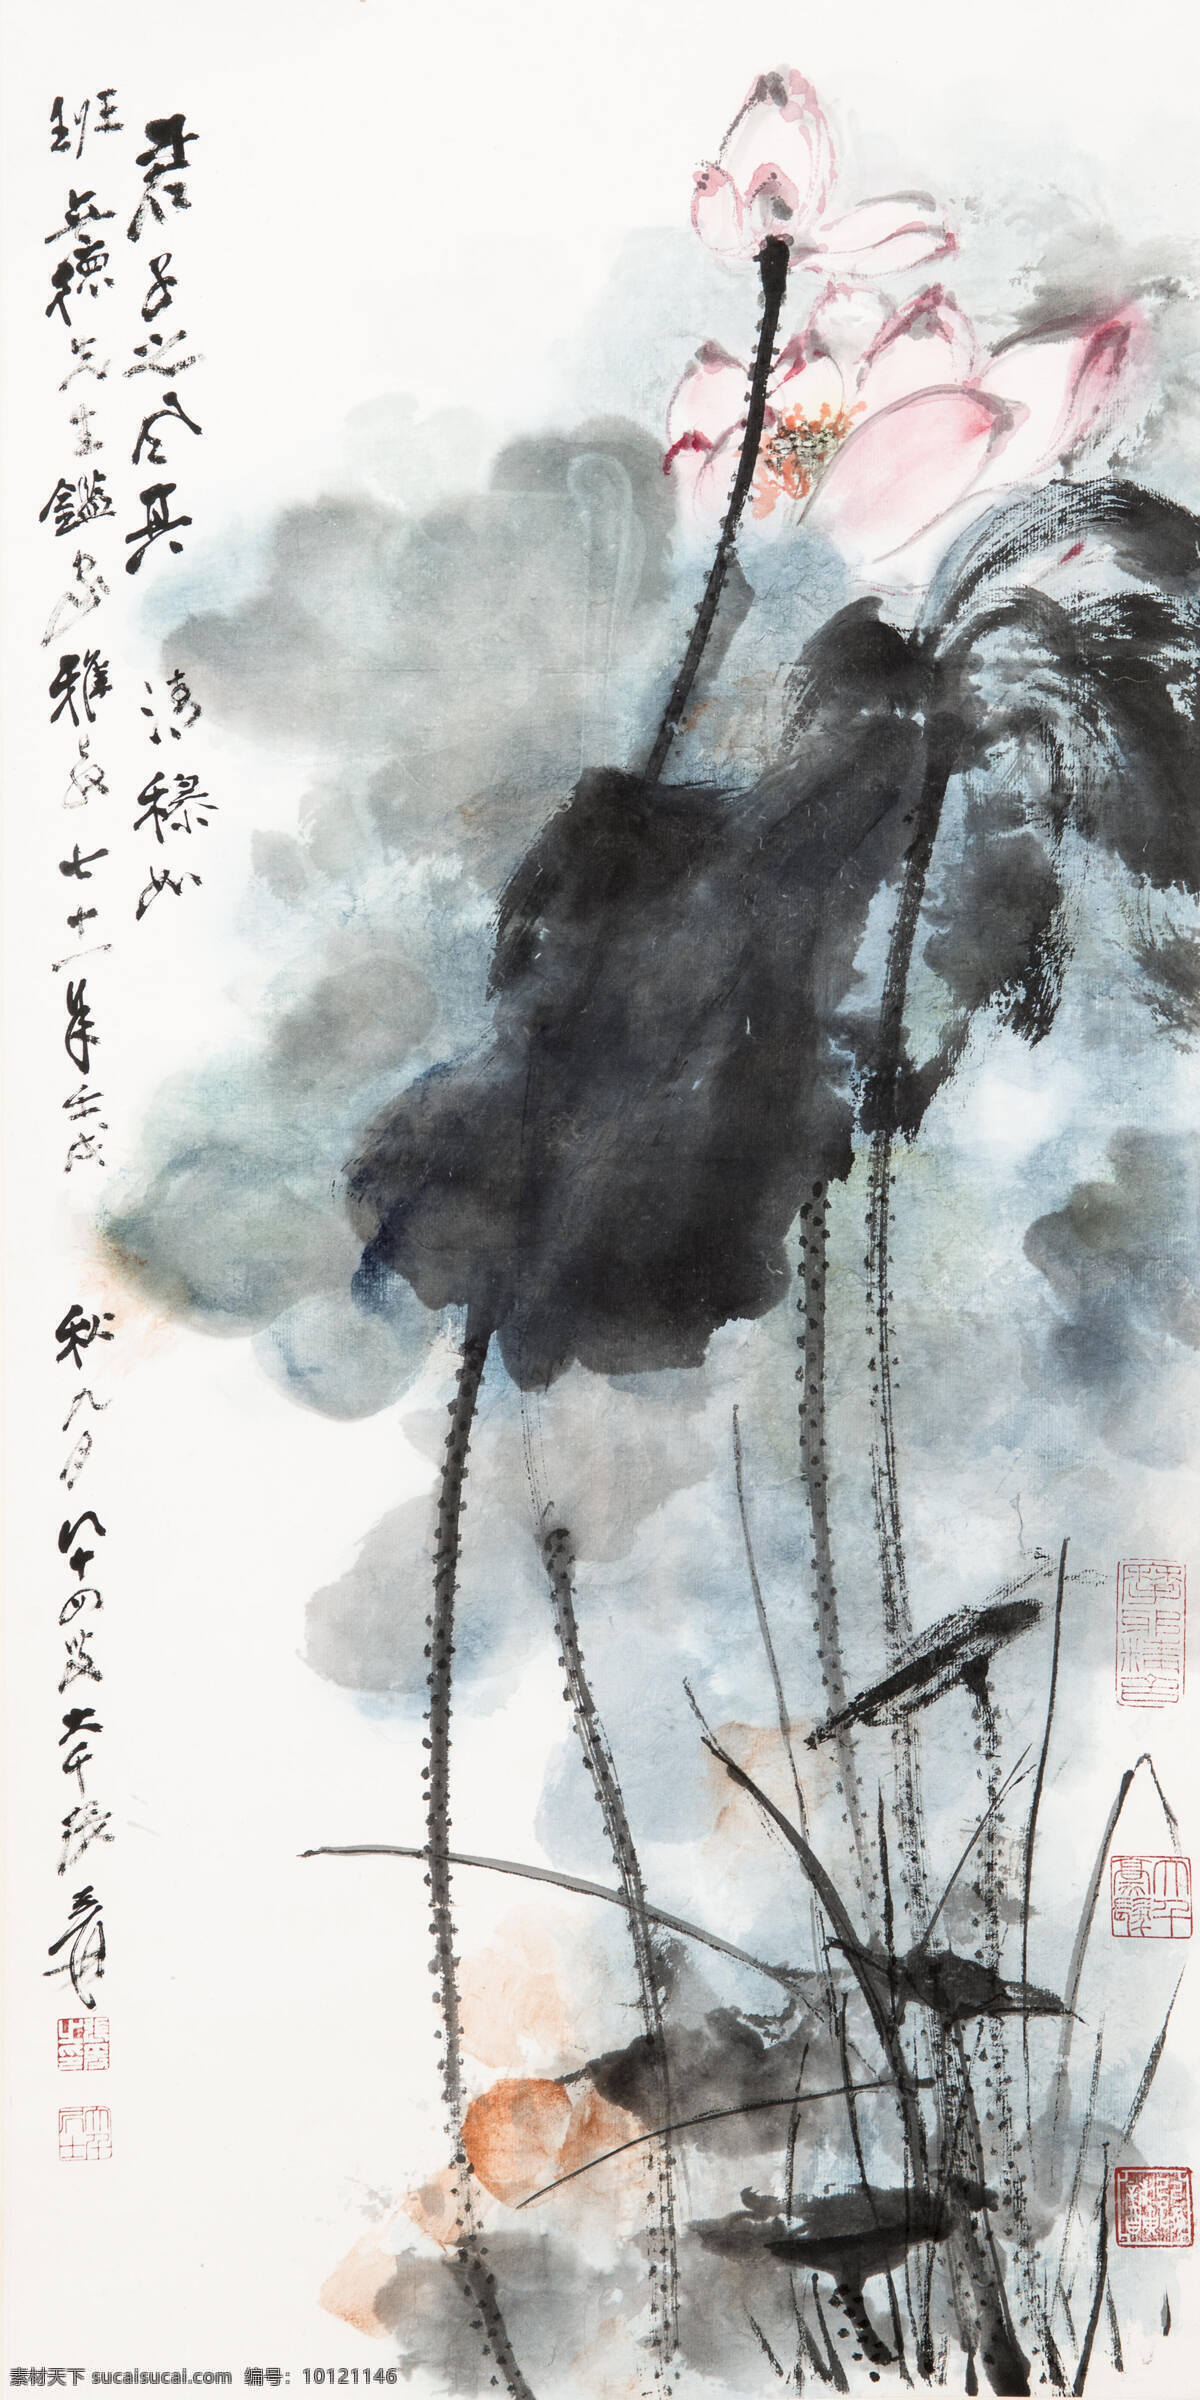 其清穆如 君子之风 张大千作品 1982年作 班立德先生 荷花 中国古代画 中国古画 文化艺术 绘画书法